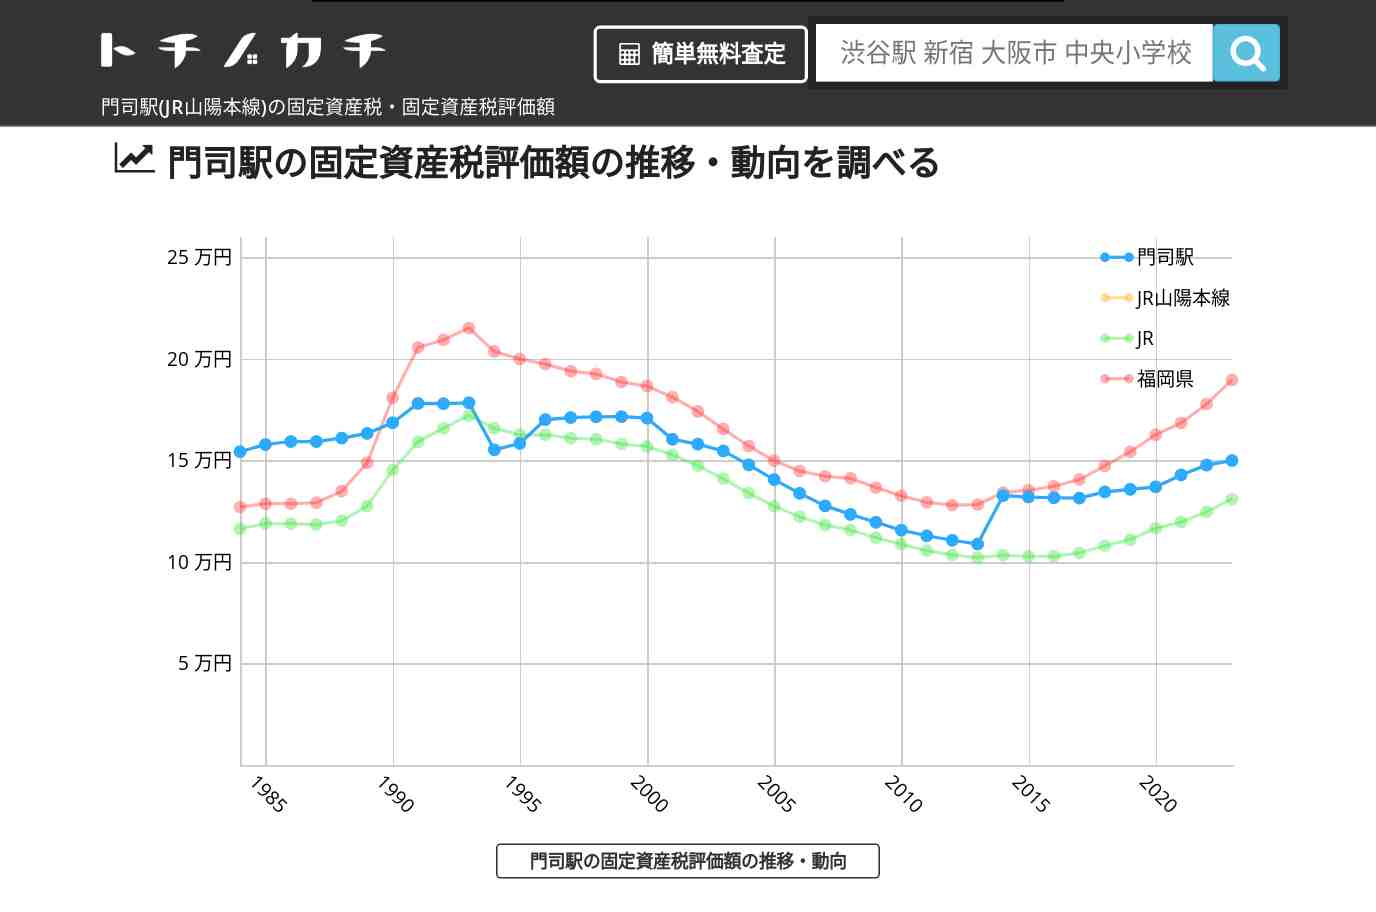 門司駅(JR山陽本線)の固定資産税・固定資産税評価額 | トチノカチ